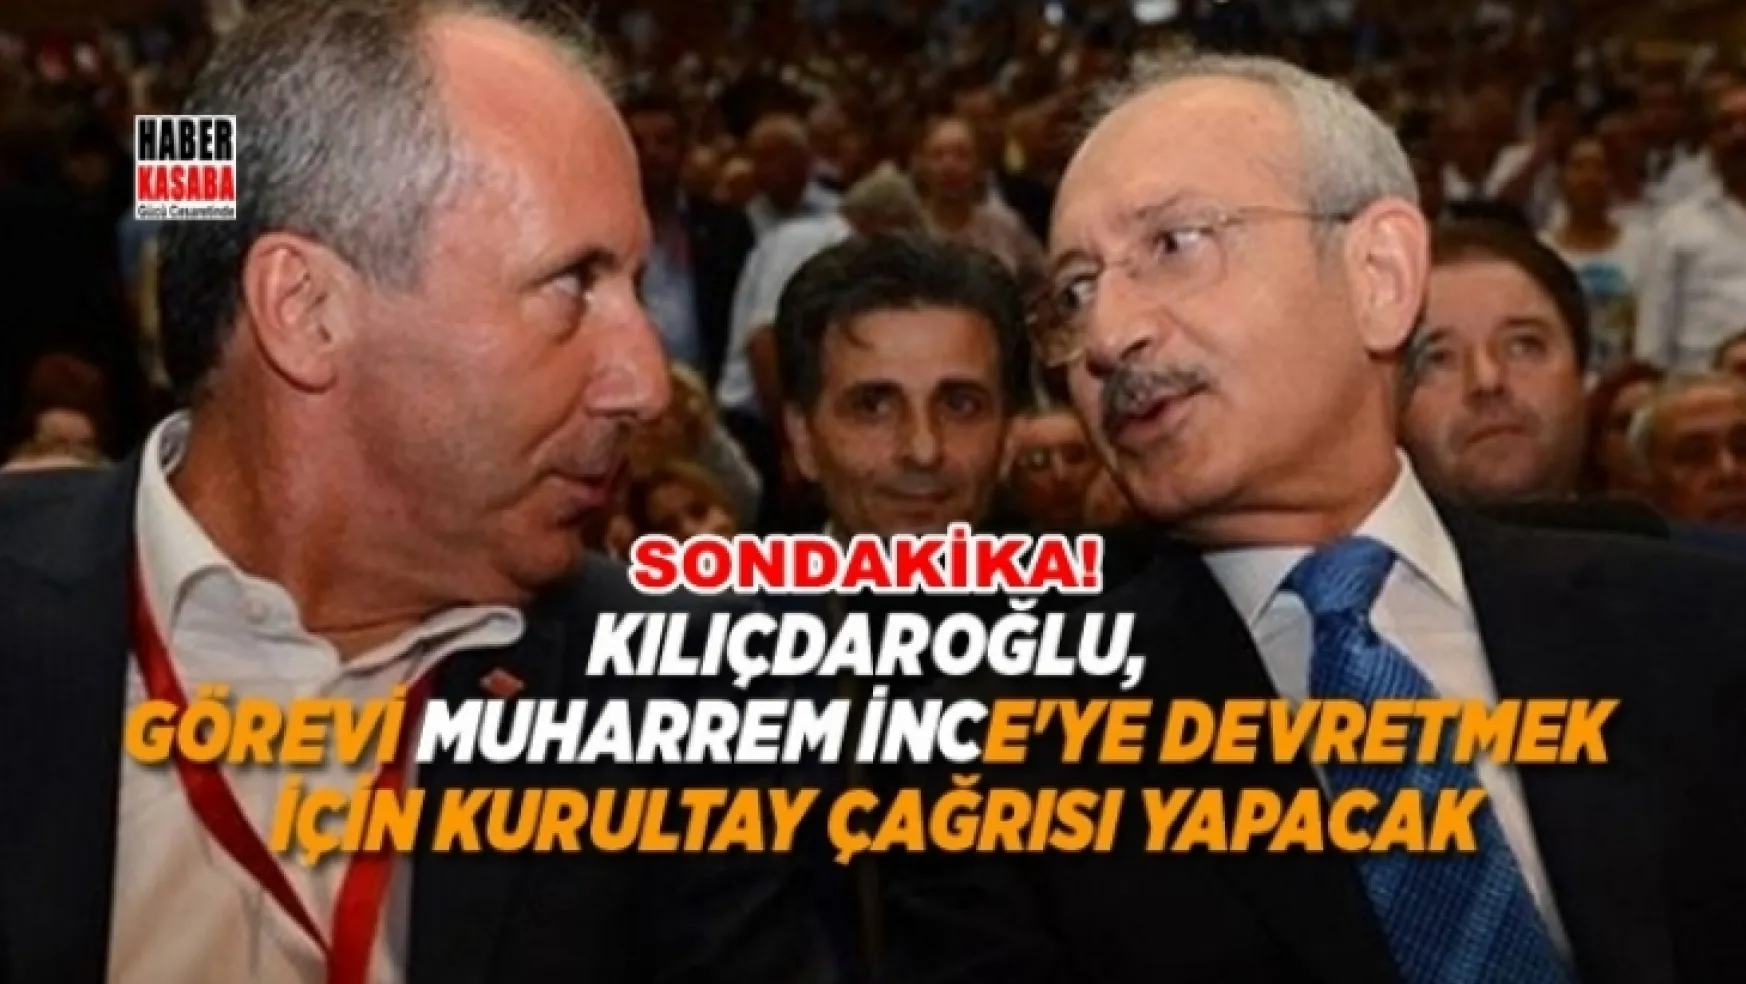 Kemal Kılıçdaroğlu, görevi Muharrem İnce'ye devretmek için kurultay çağrısı yapacak